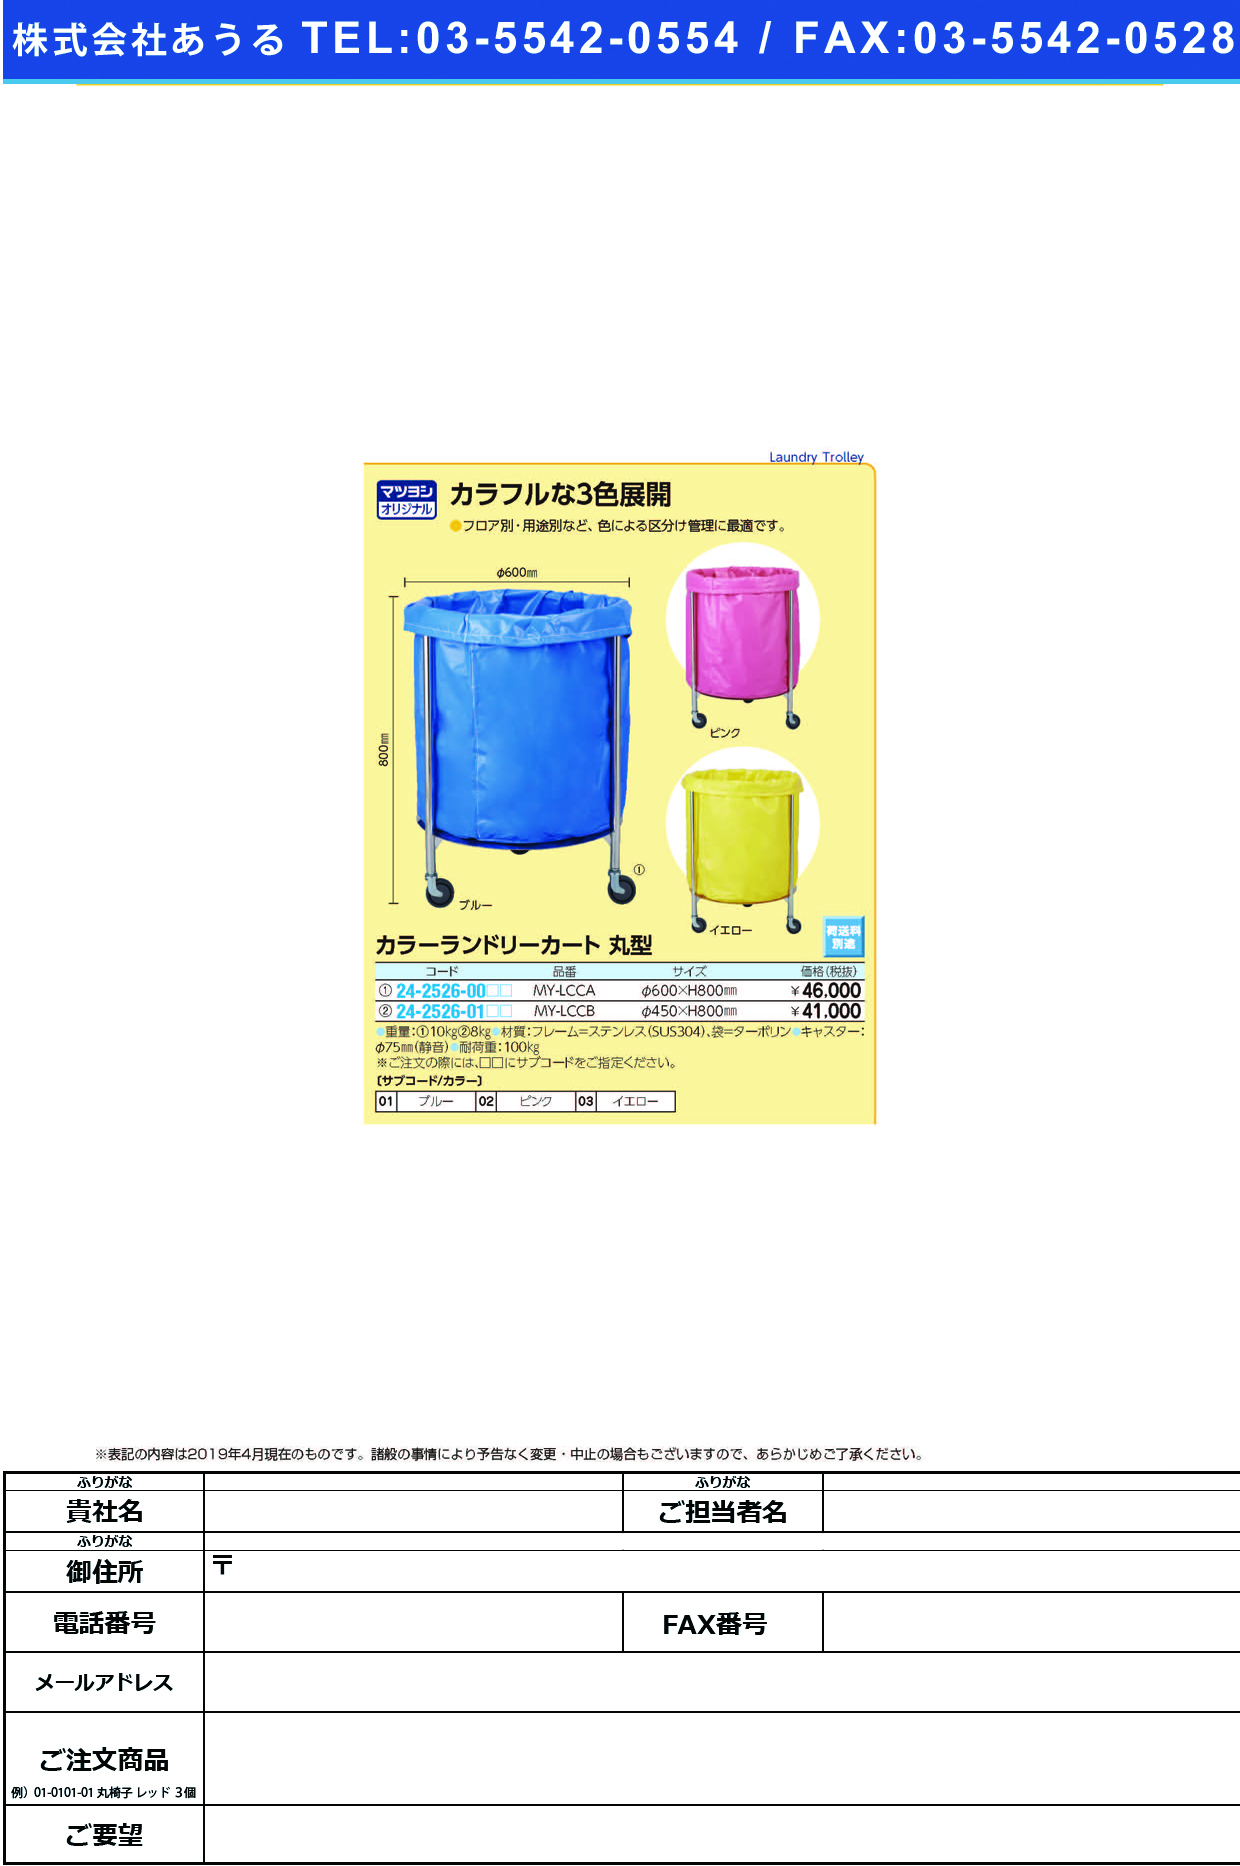 (24-2526-01)カラーランドリーカート（丸型） MY-LCCB(450X800MM) ｶﾗｰﾗﾝﾄﾞﾘｰｶｰﾄﾏﾙｶﾞﾀ ブルー【1台単位】【2019年カタログ商品】